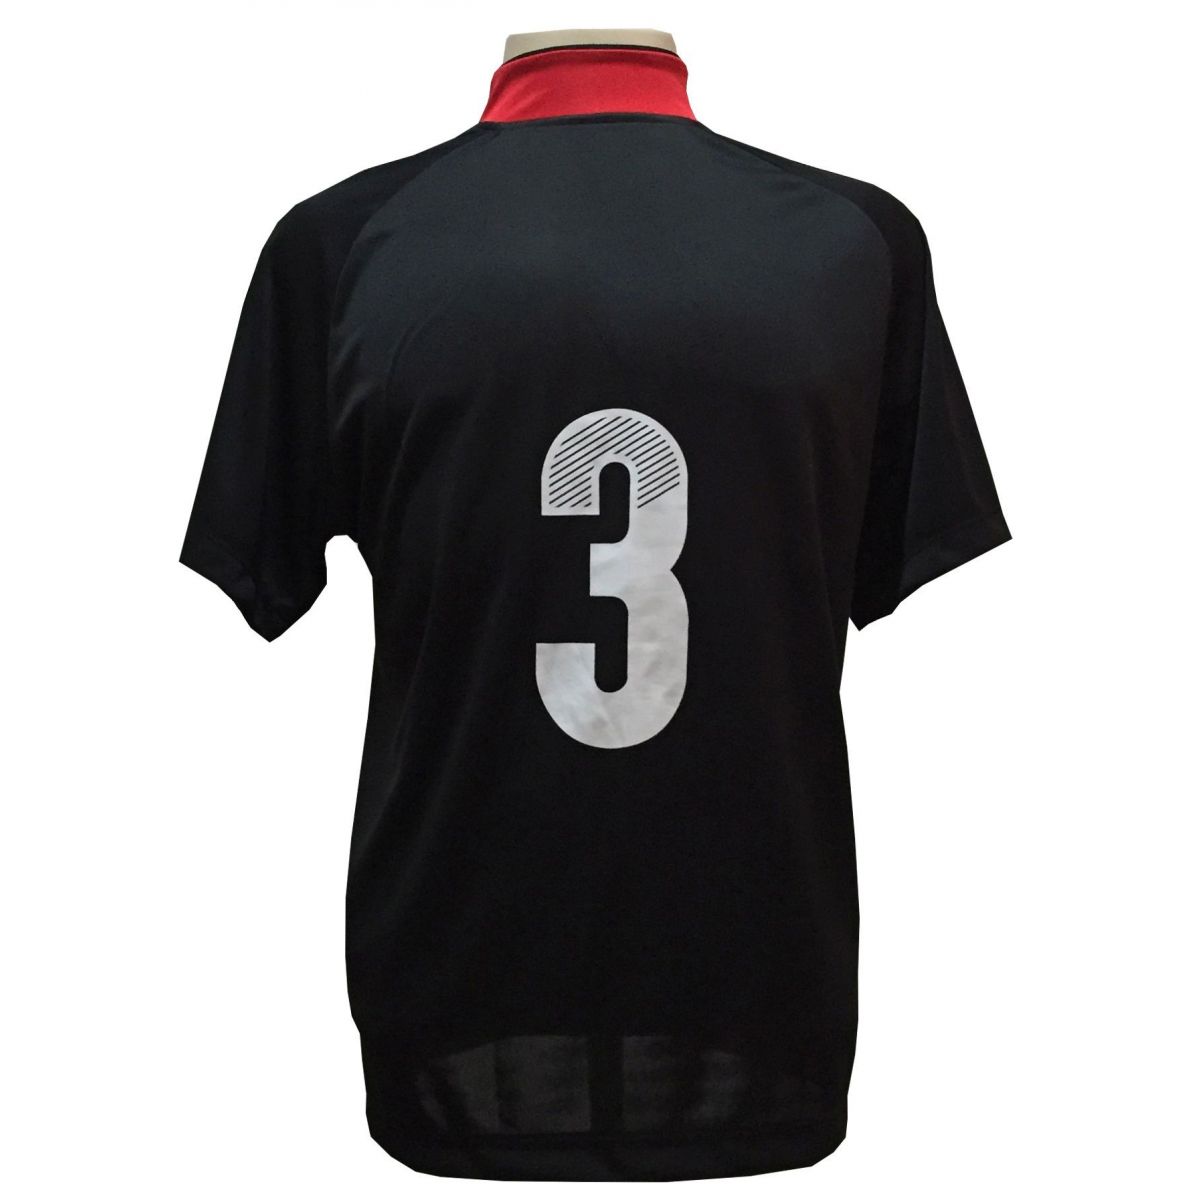 Uniforme Esportivo com 12 camisas modelo Milan Preto/Vermelho + 12 calções modelo Madrid Preto + Brindes